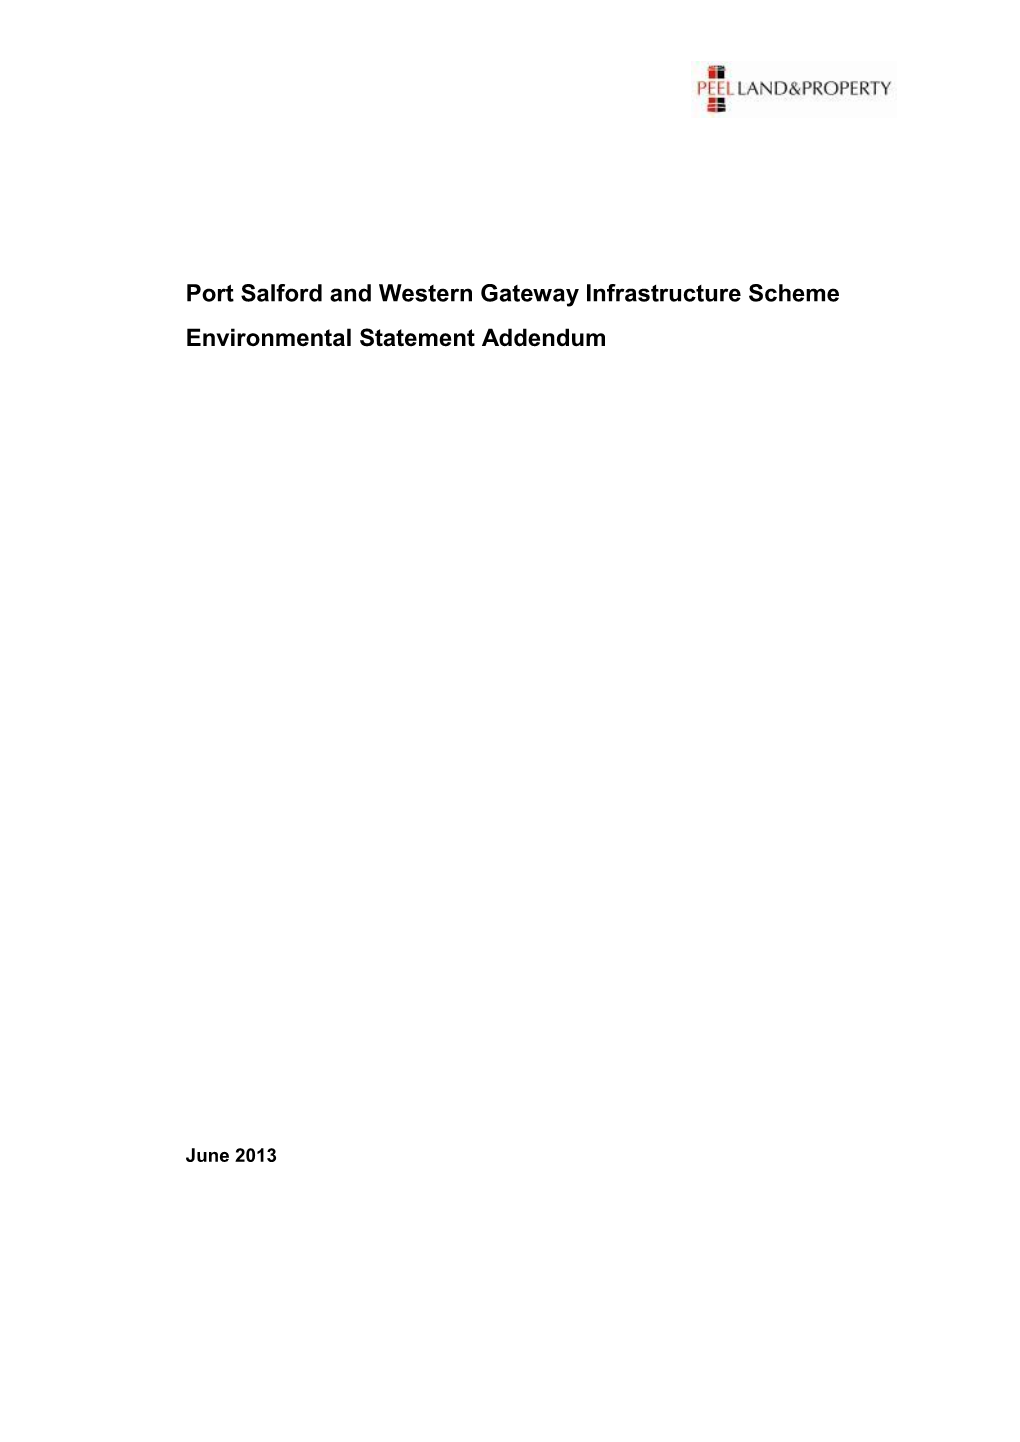 Port Salford and Western Gateway Infrastructure Scheme Environmental Statement Addendum